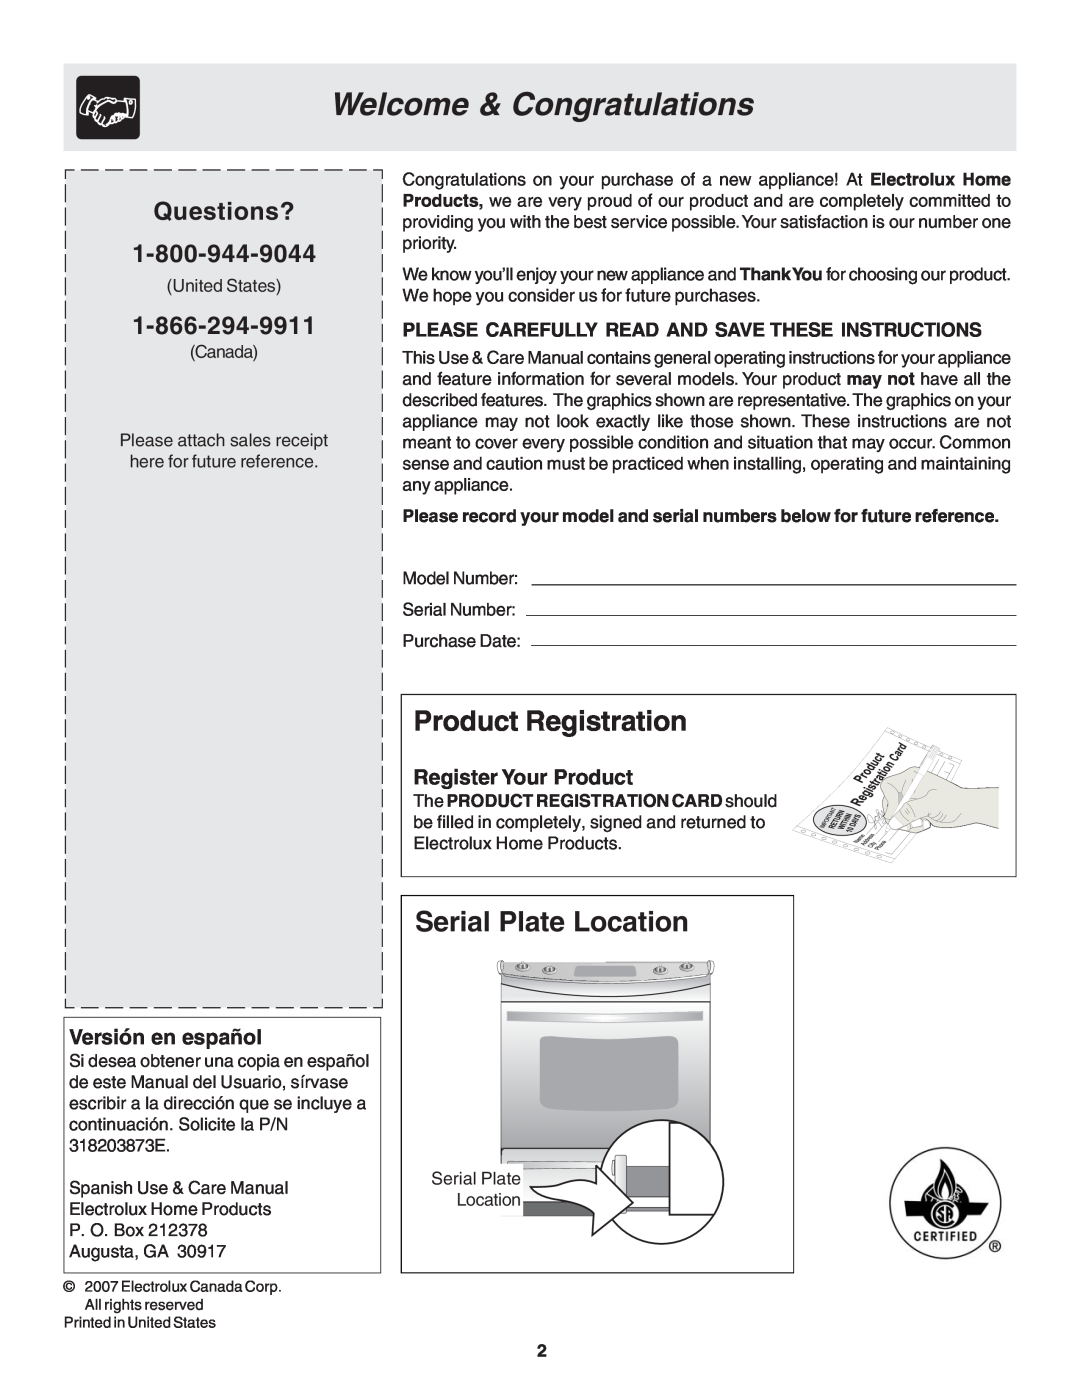 Frigidaire 318203873 manual Welcome & Congratulations, Product Registration, Serial Plate Location, Versión en español 